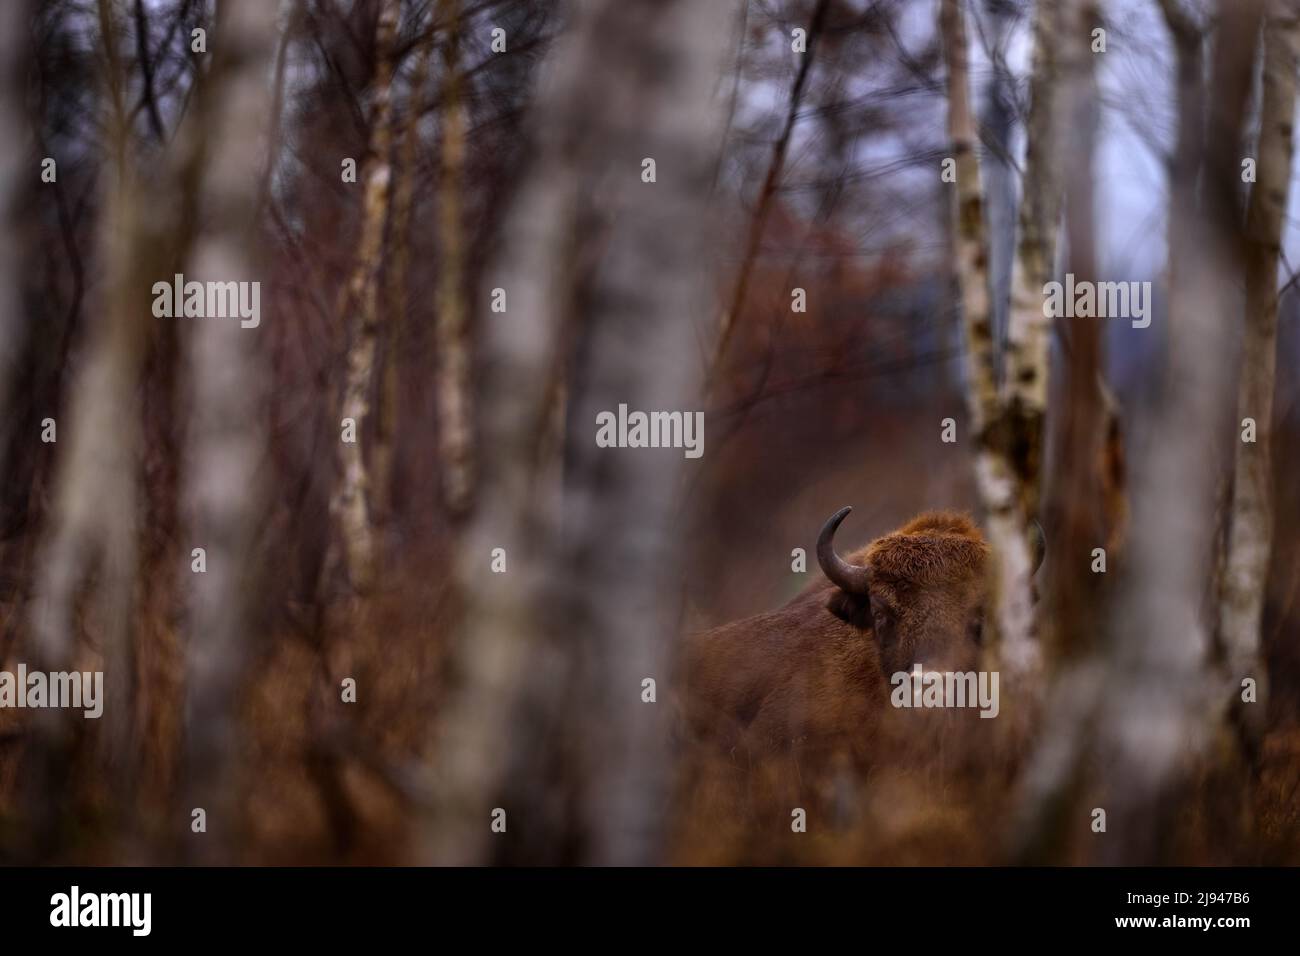 Bisonherde im Herbstwald, sonnige Szene mit großen braunen Tieren im Naturgebiet, gelbe Blätter auf den Bäumen, Bialowieza NP, Polen. Wildtiere Stockfoto